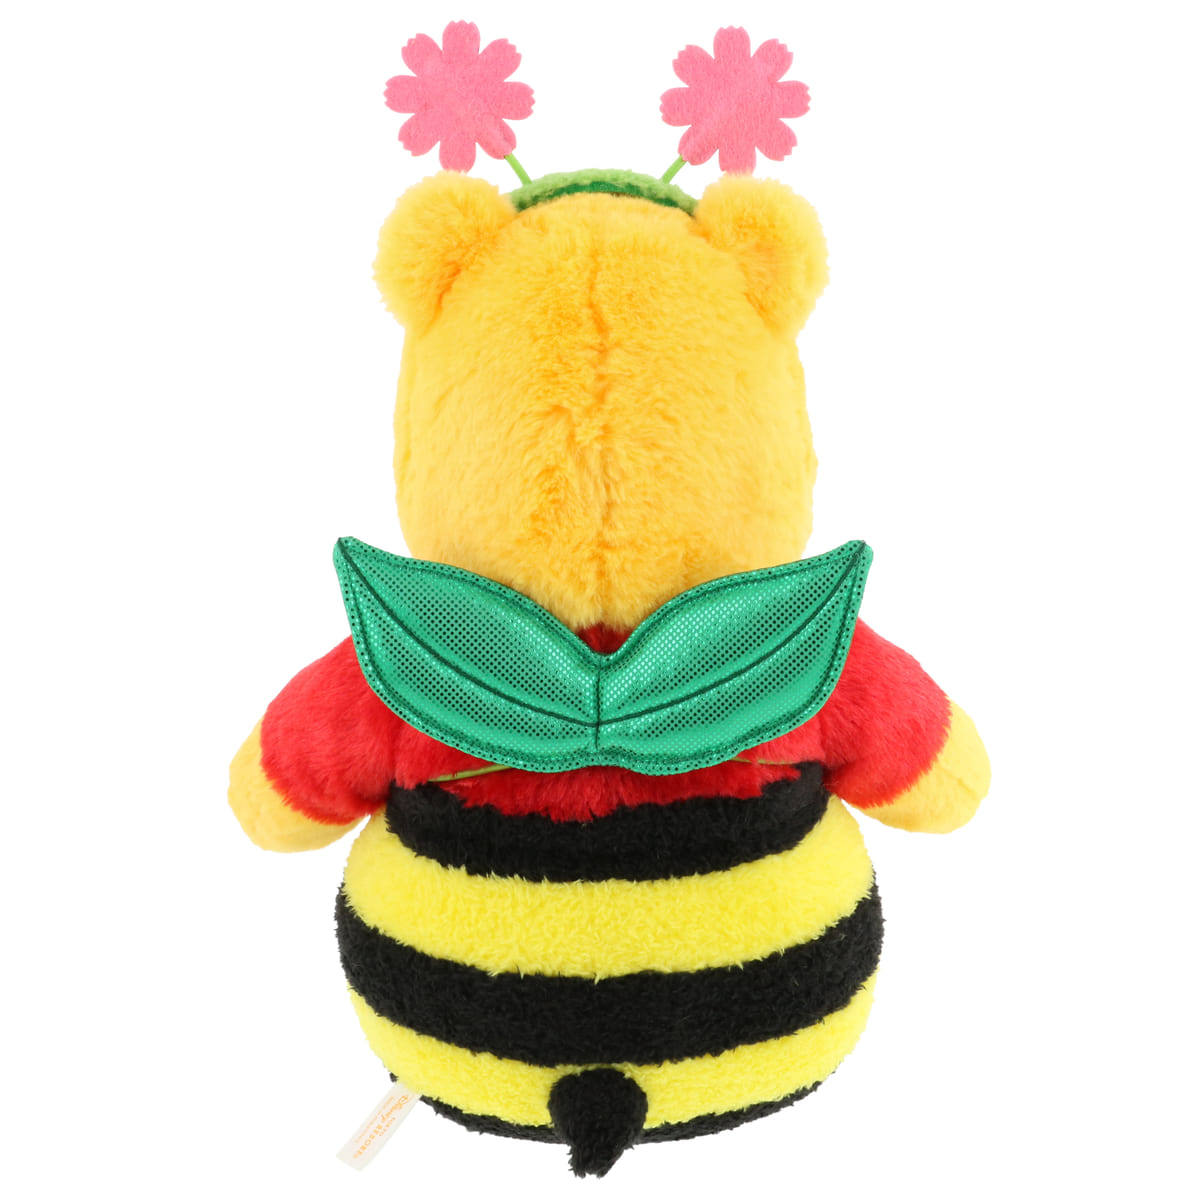 ハチに仮装したくまのプーさん 東京ディズニーリゾート ディズニー ハロウィーン22 グッズ Dtimes